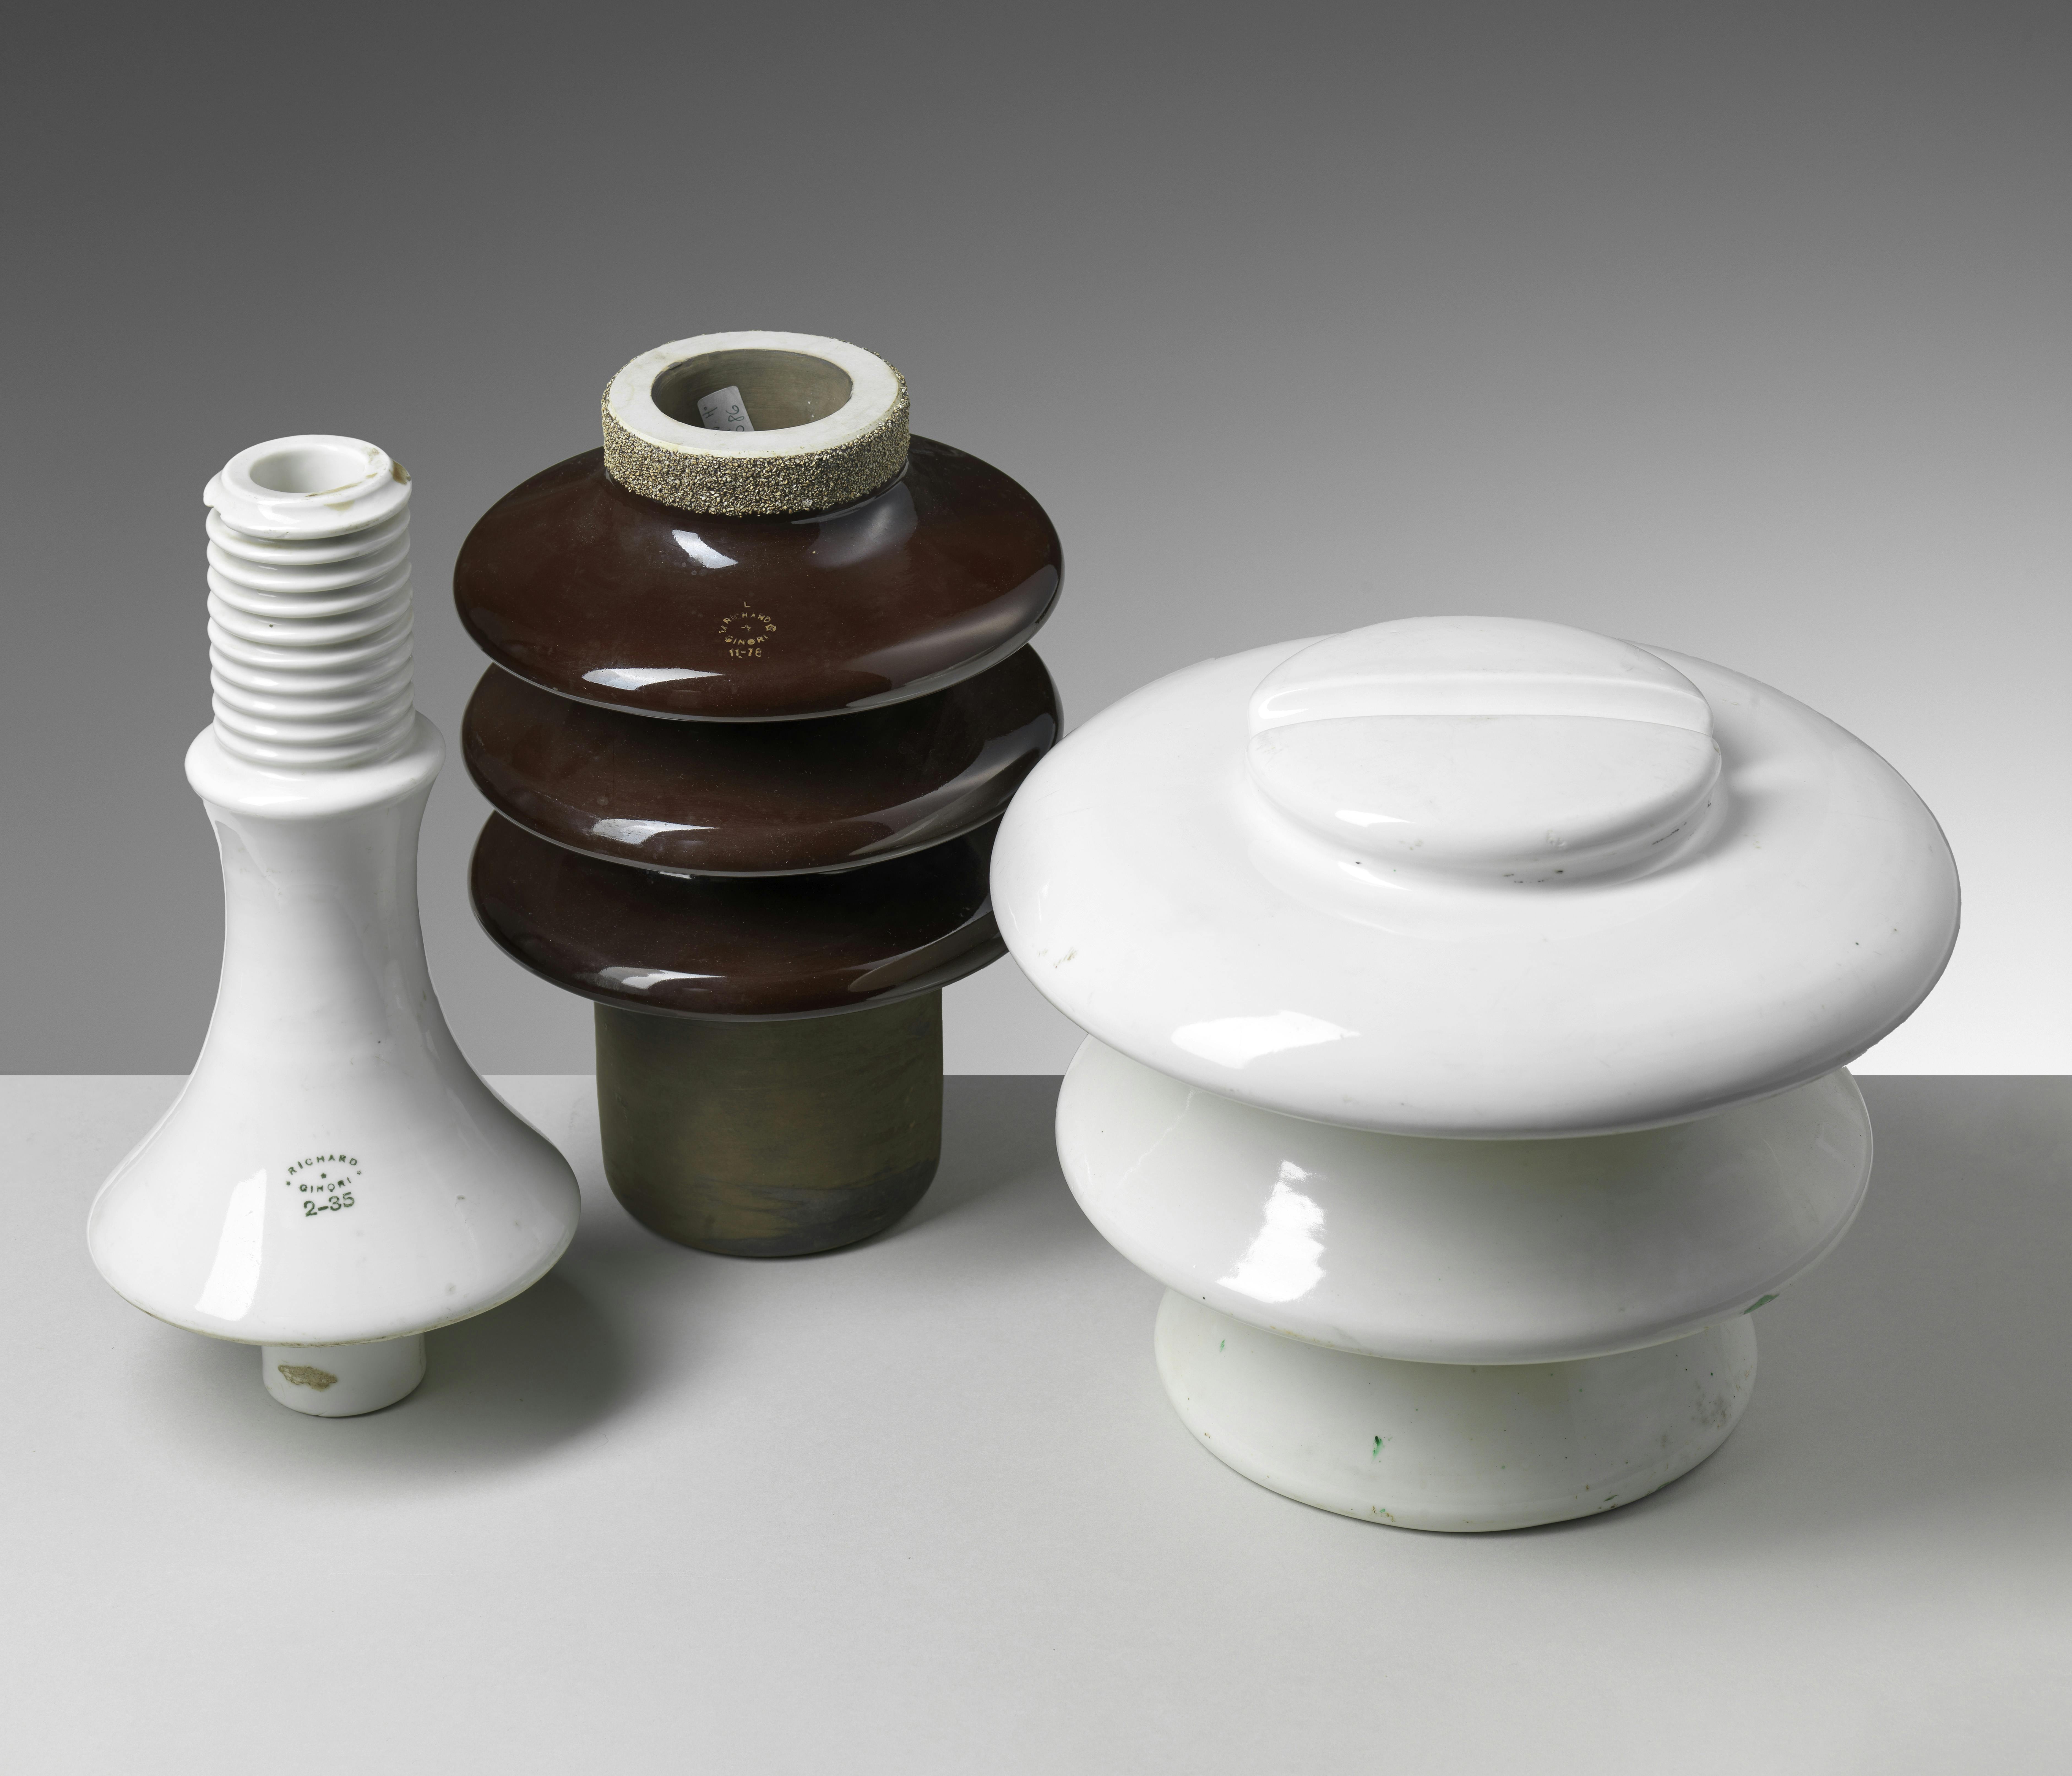 Tre isolatori in ceramica, due bianchi e uno bruno, di diverse forme e dimensioni.